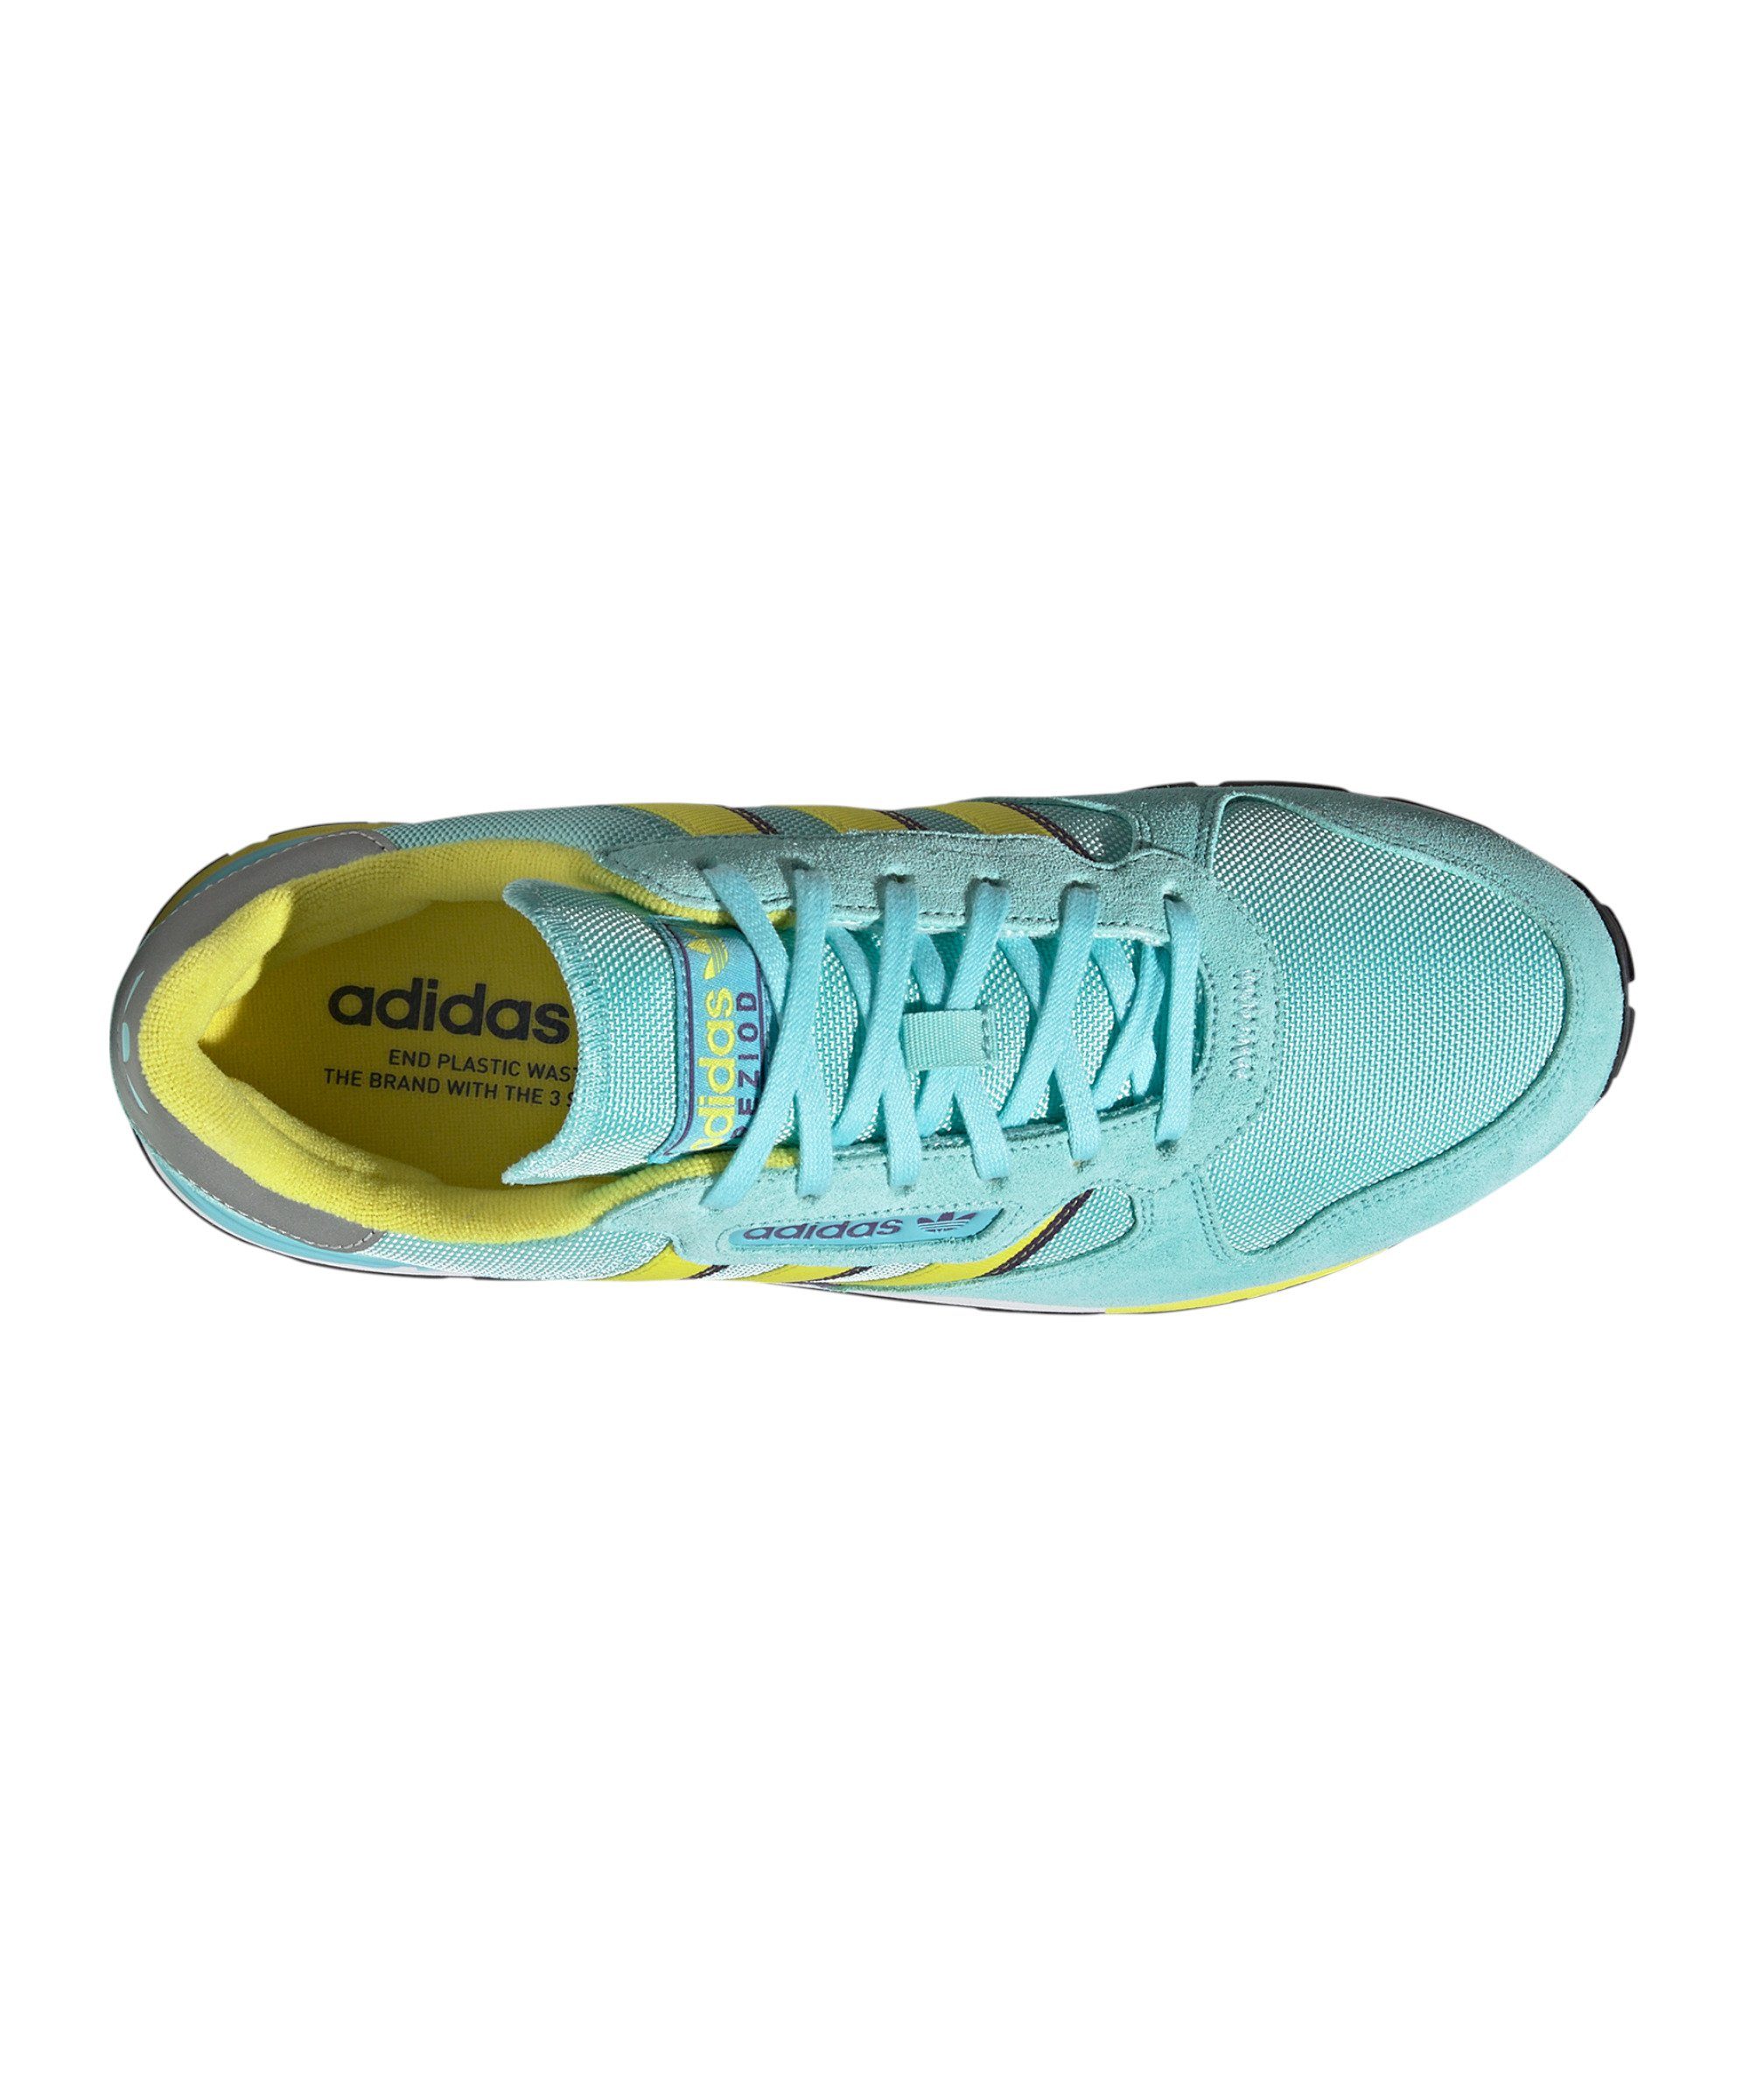 adidas Originals Treziod blaugelblila 2 Sneaker